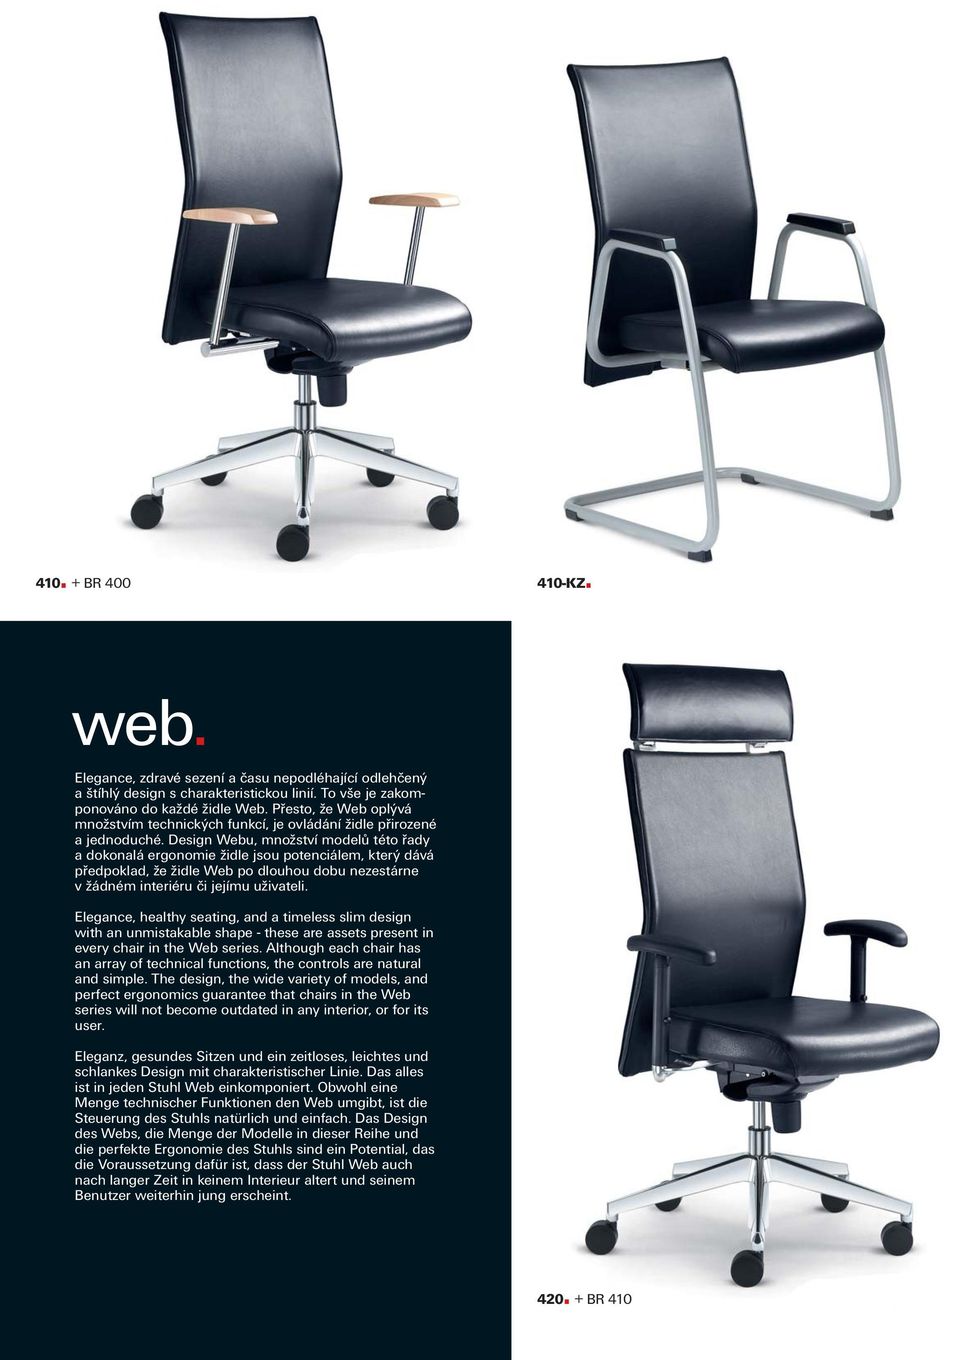 Design Webu, množství modelů této řady a dokonalá ergonomie židle jsou potenciálem, který dává předpoklad, že židle Web po dlouhou dobu nezestárne v žádném interiéru či jejímu uživateli.